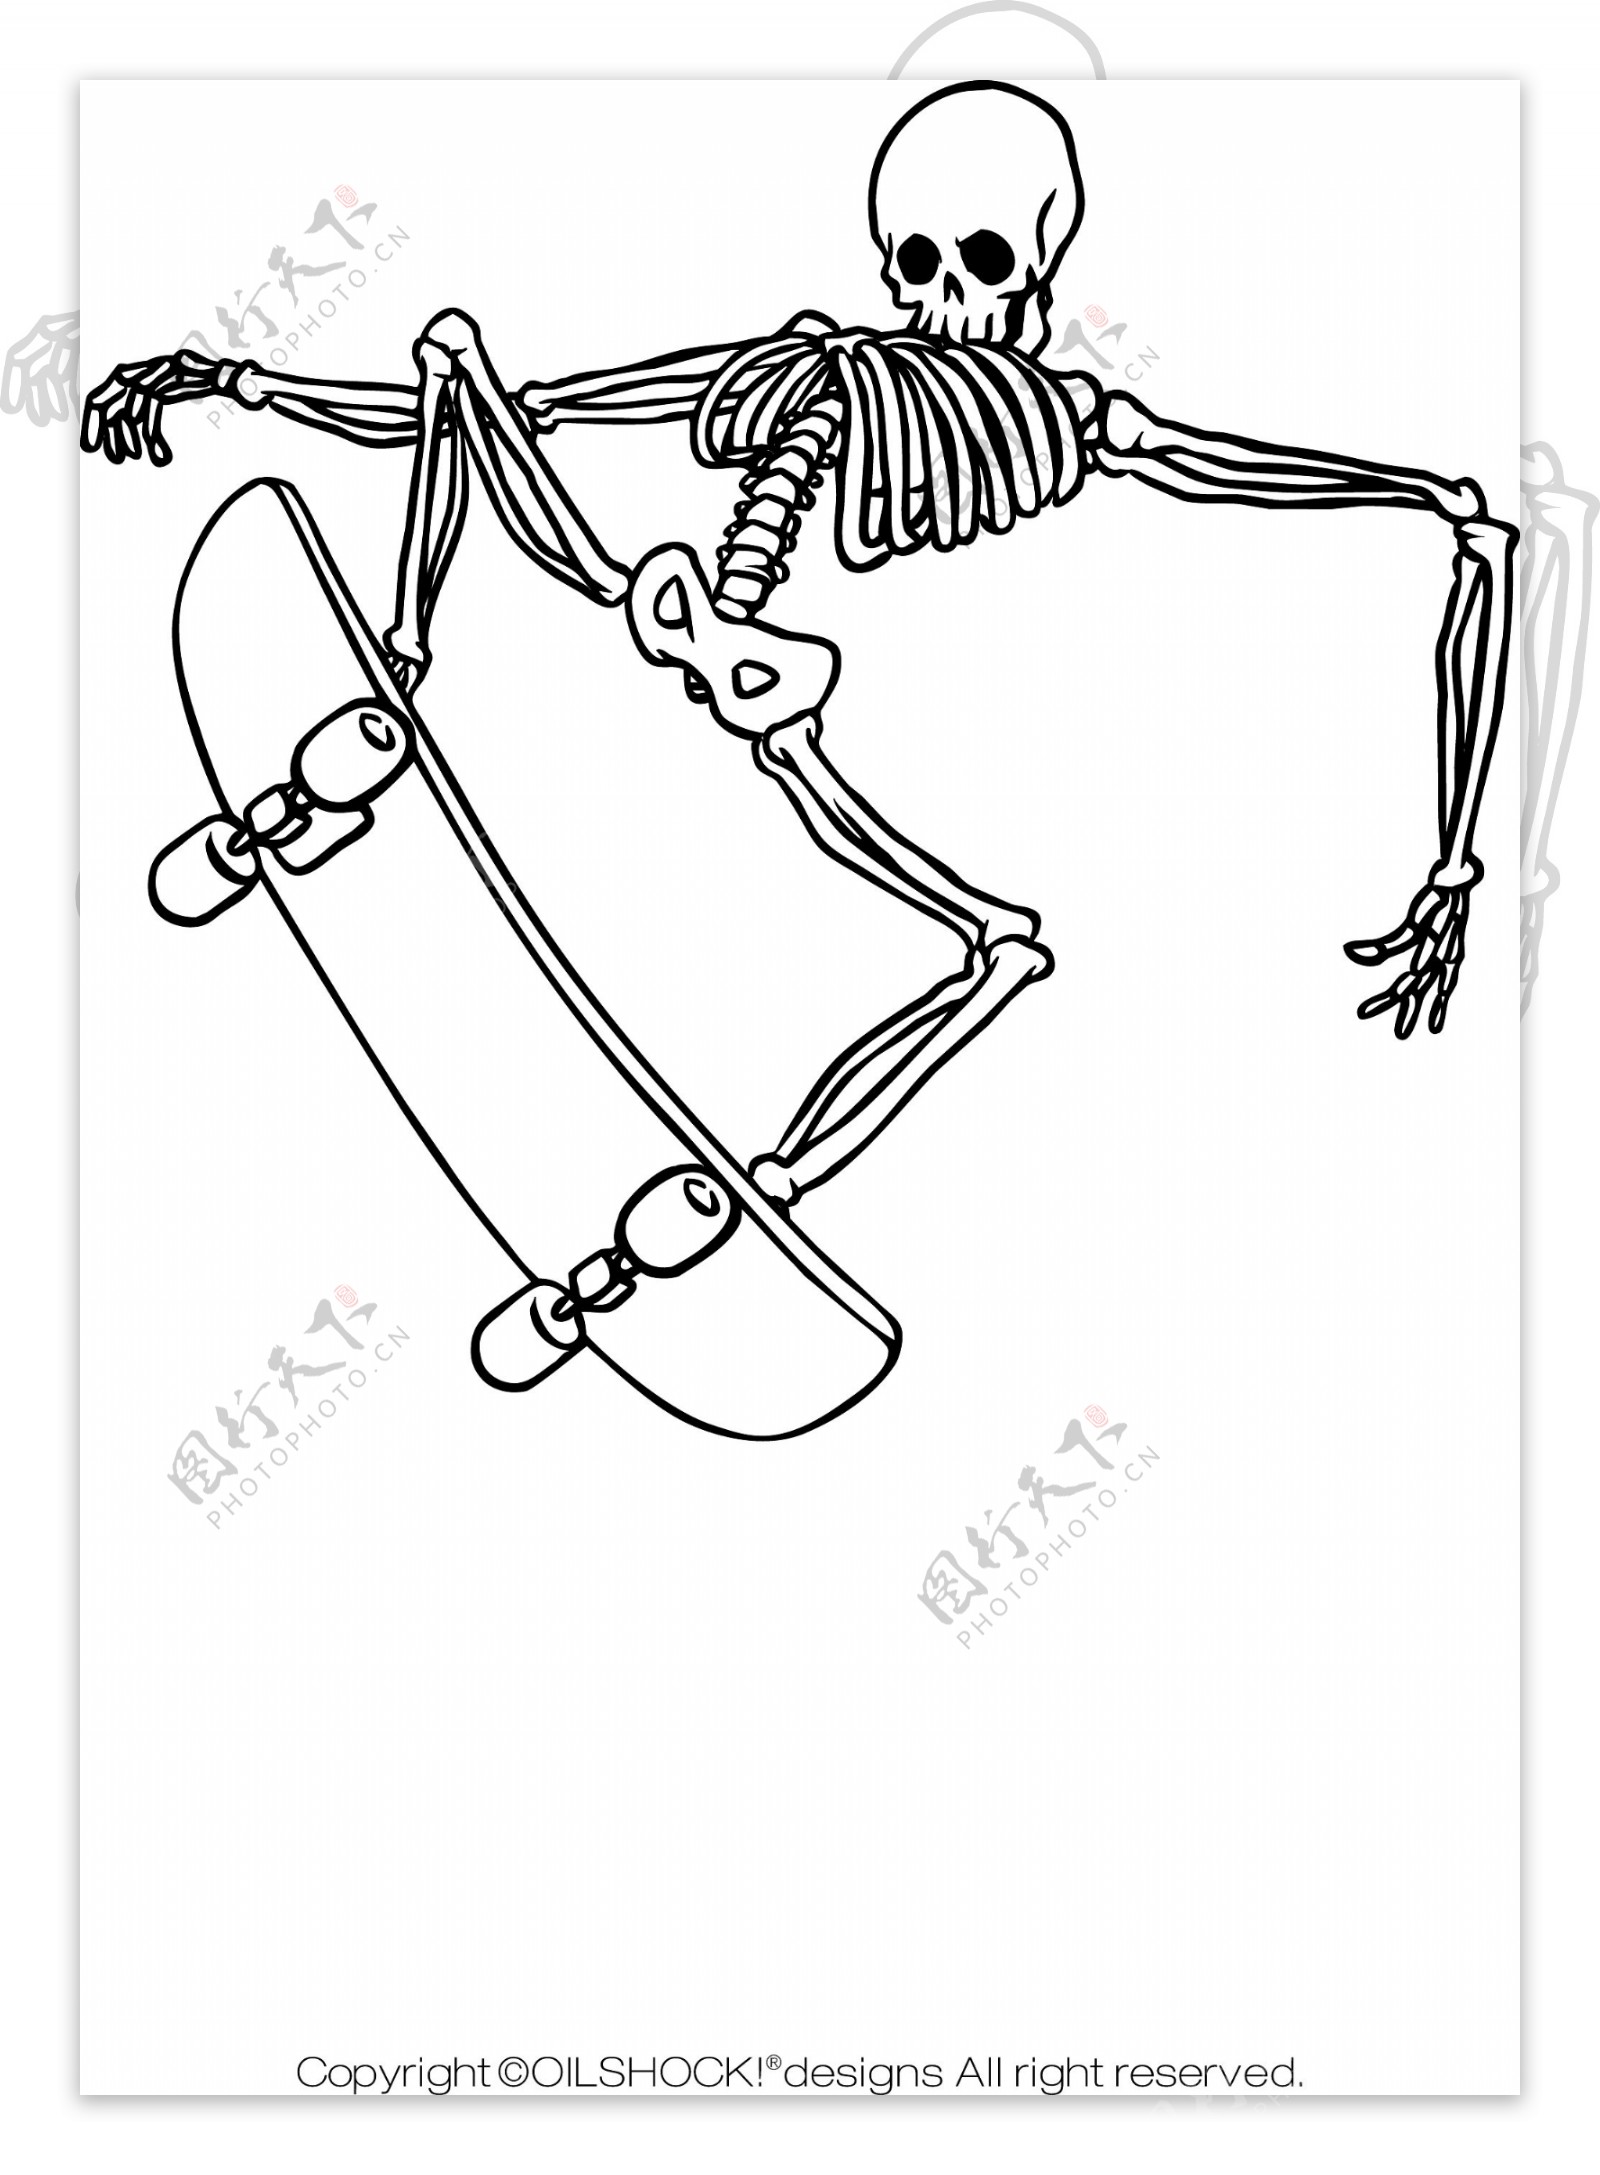 印花矢量图黑白色骷髅头滑板运动朋克风格免费素材